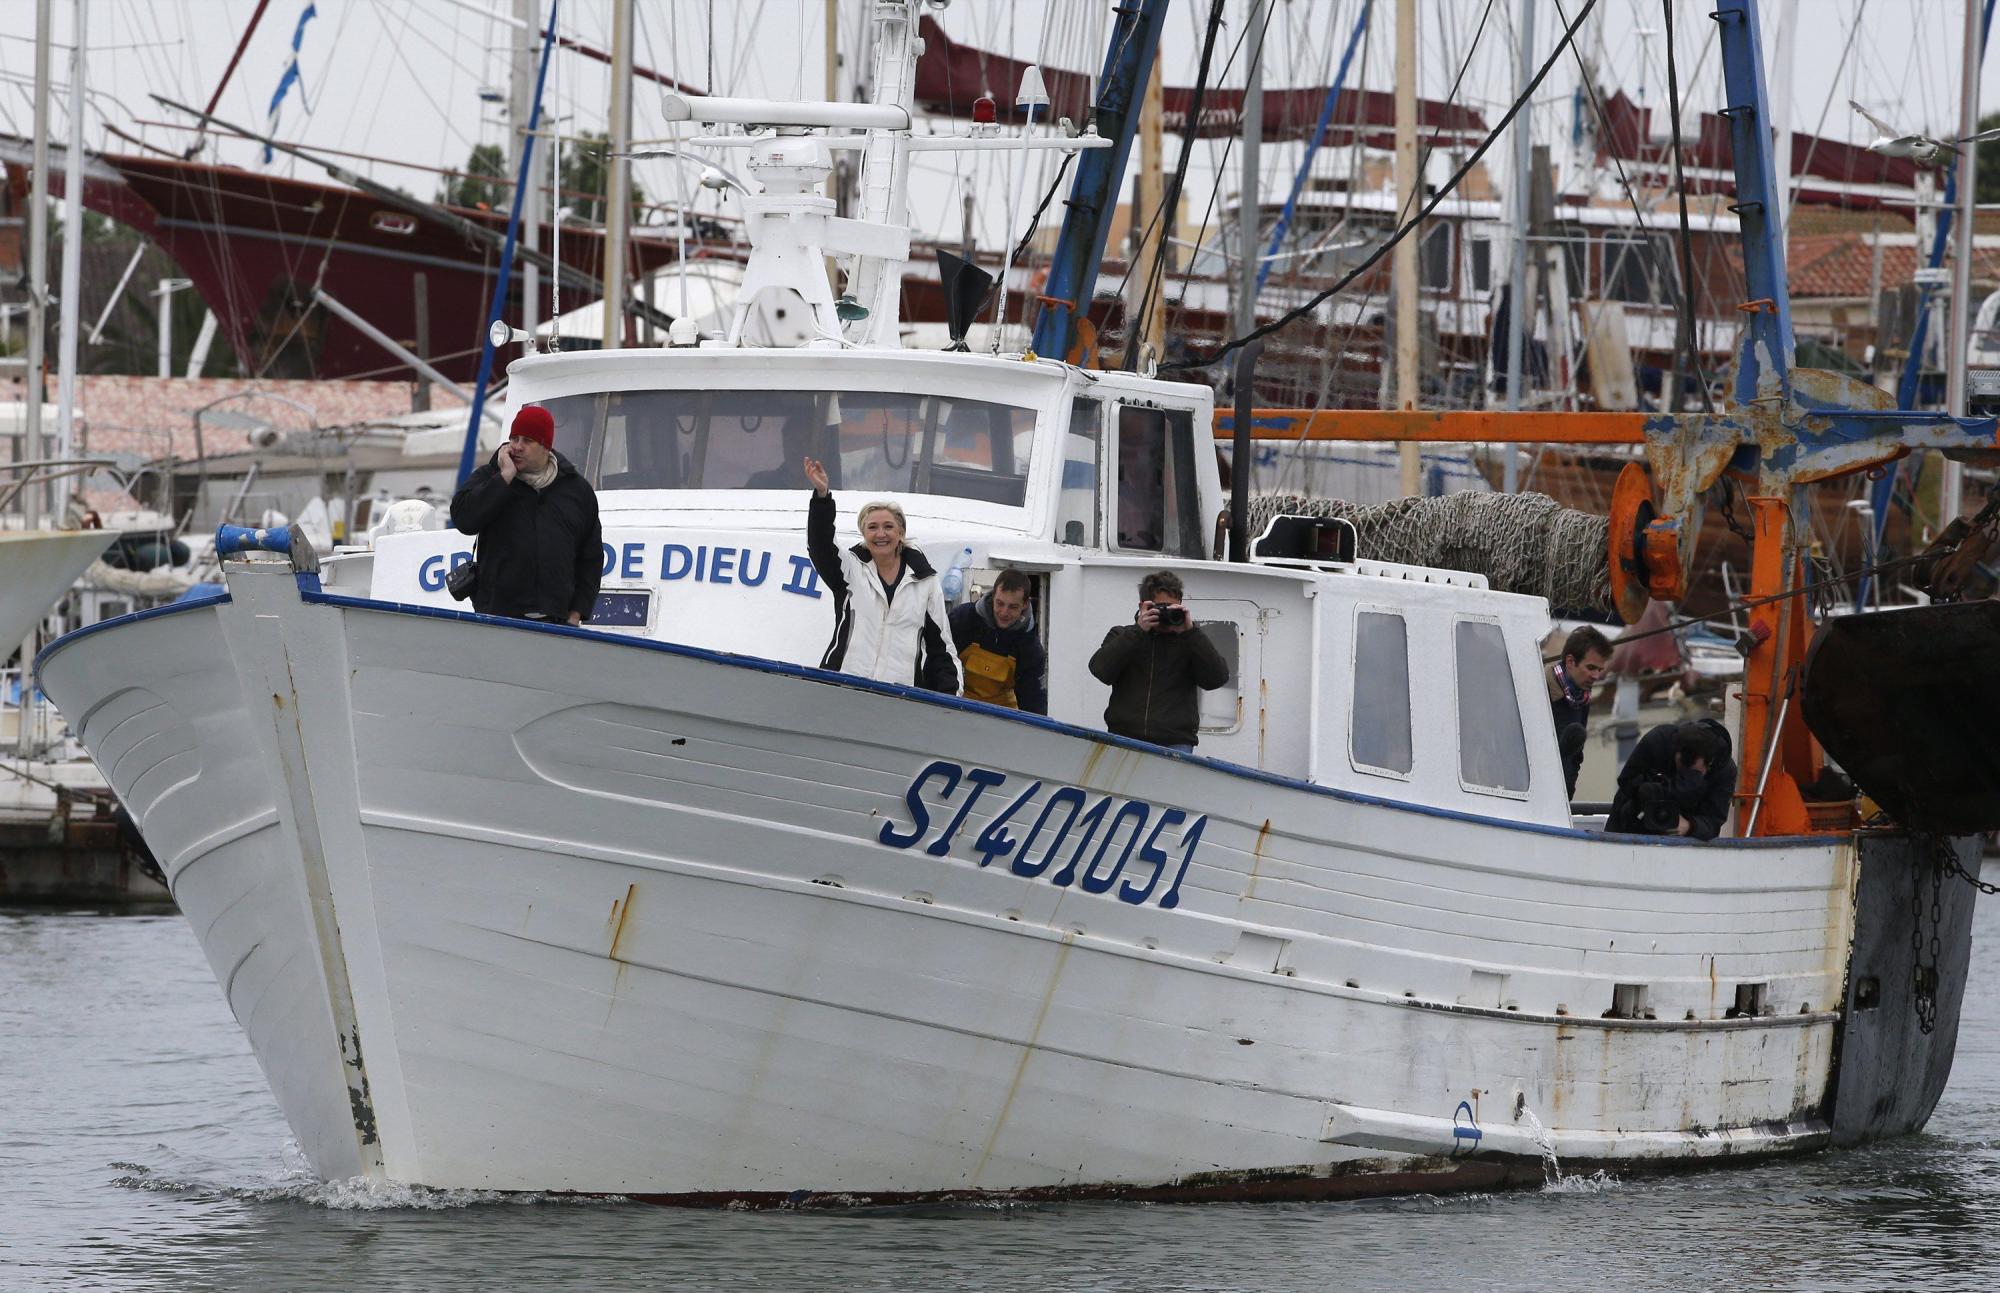 Le Pen hace campaña en barco pesquero